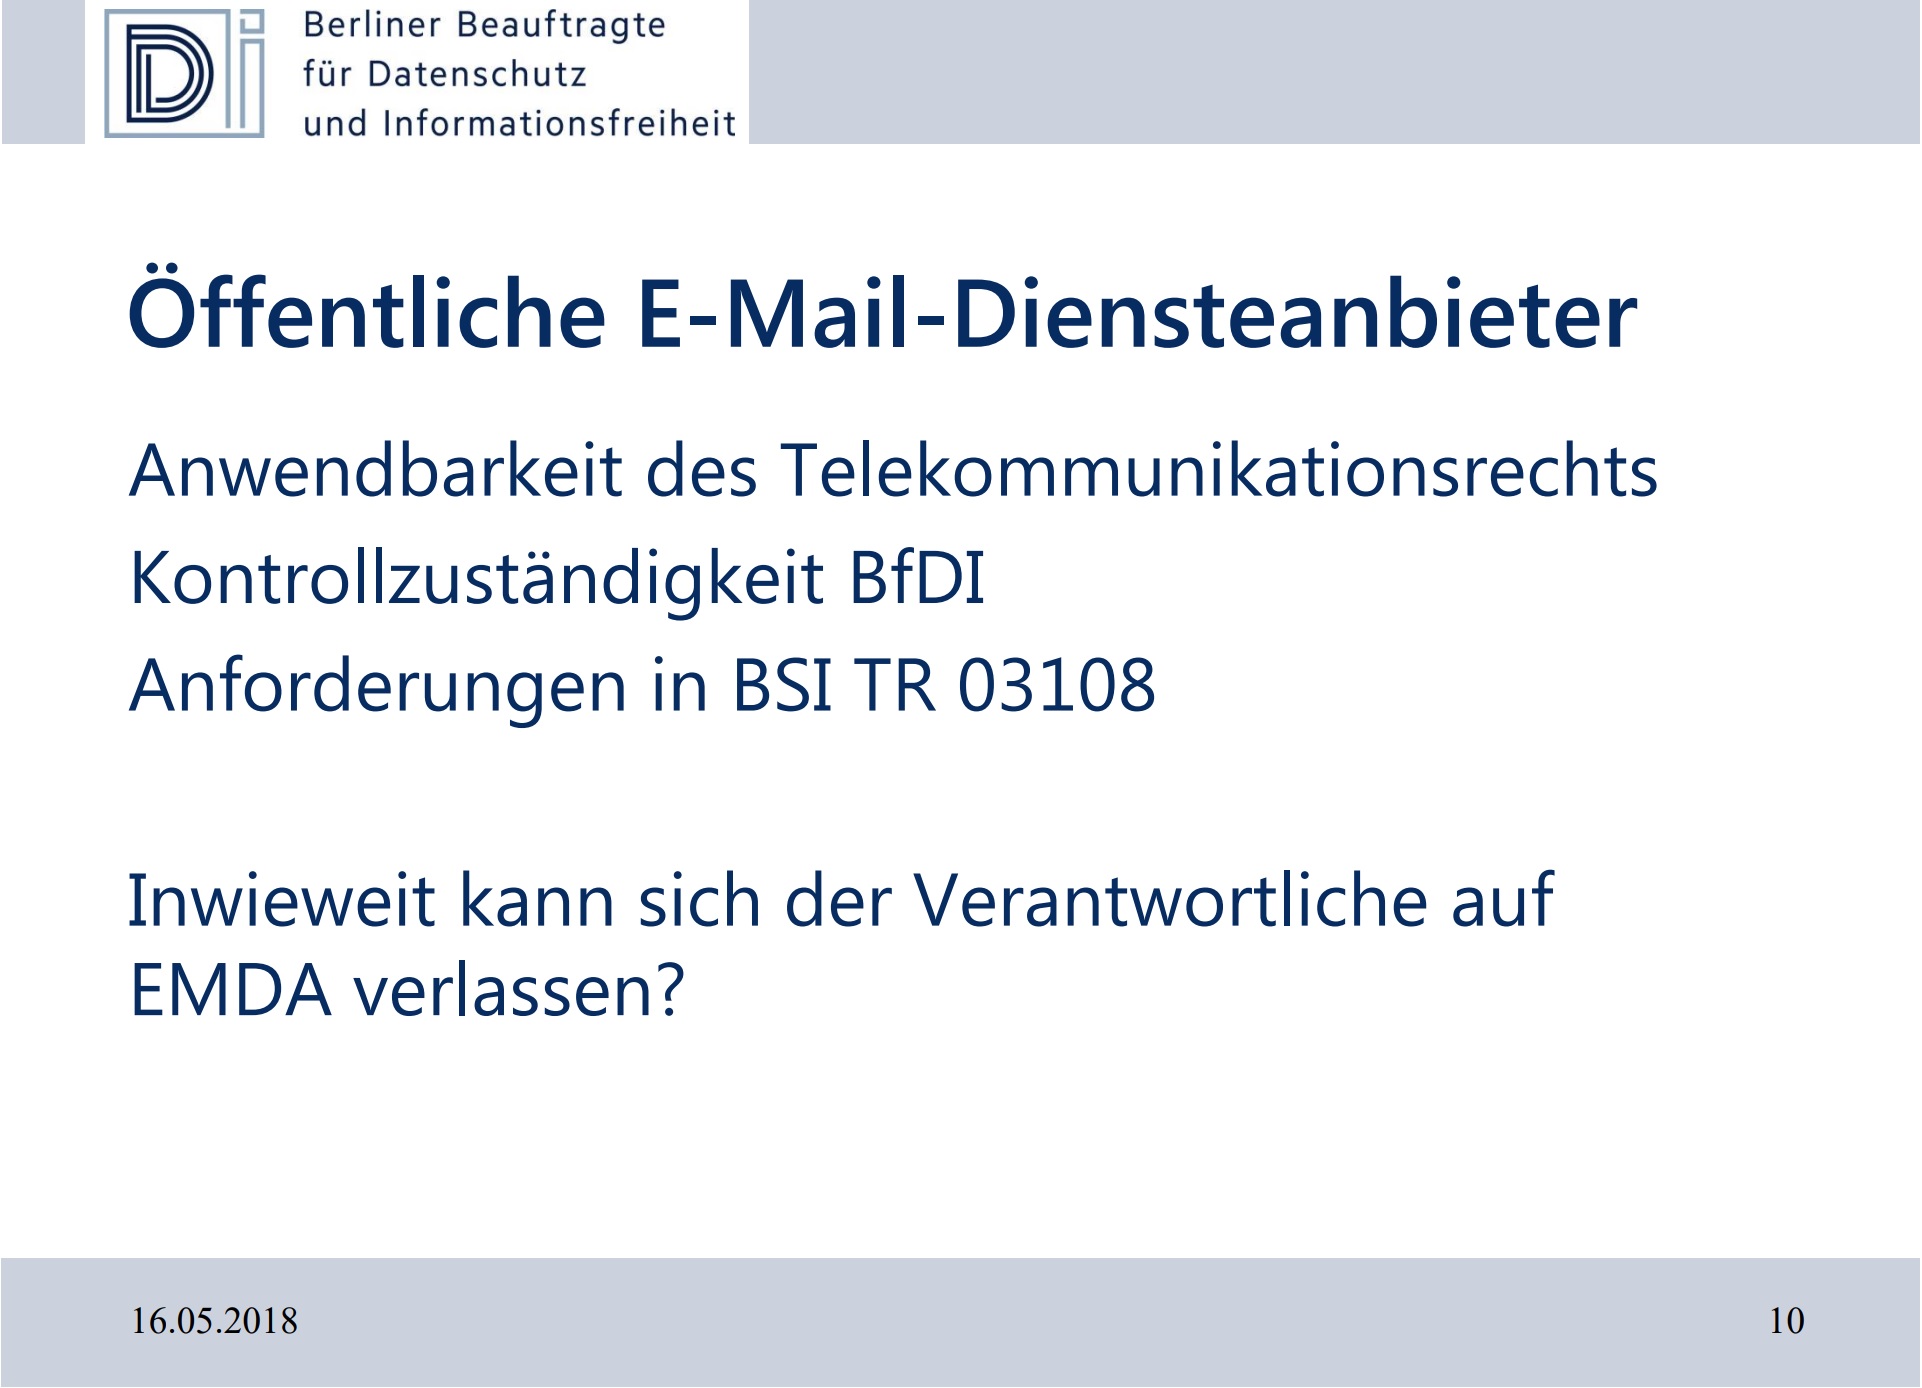 Ã–ffentliche E-Mail-Diensteanbieter: Anwendbarkeit des Telekommunikationsrechts, KontrollzustÃ¤ndigkeit BfDI, Anforderungen in BSI TR 03108. Inwieweit kann sich der Verantwortliche auf EMDA verlassen?